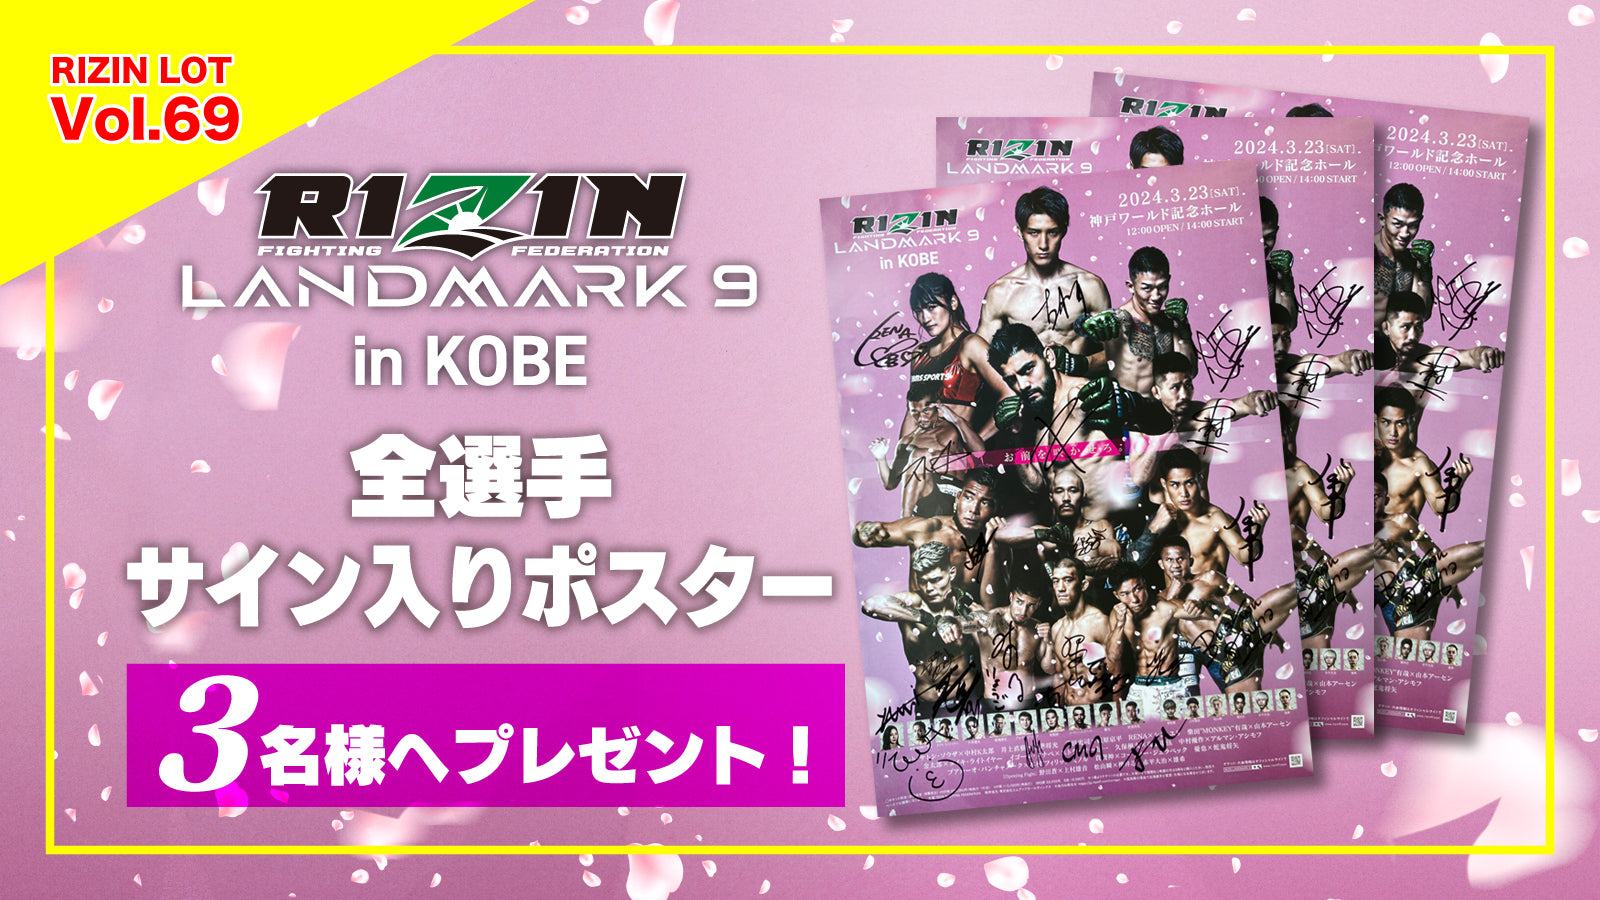 RIZIN LOT Vol.69☆【RIZIN LANDMARK 9 in KOBE/全選手サイン入り 